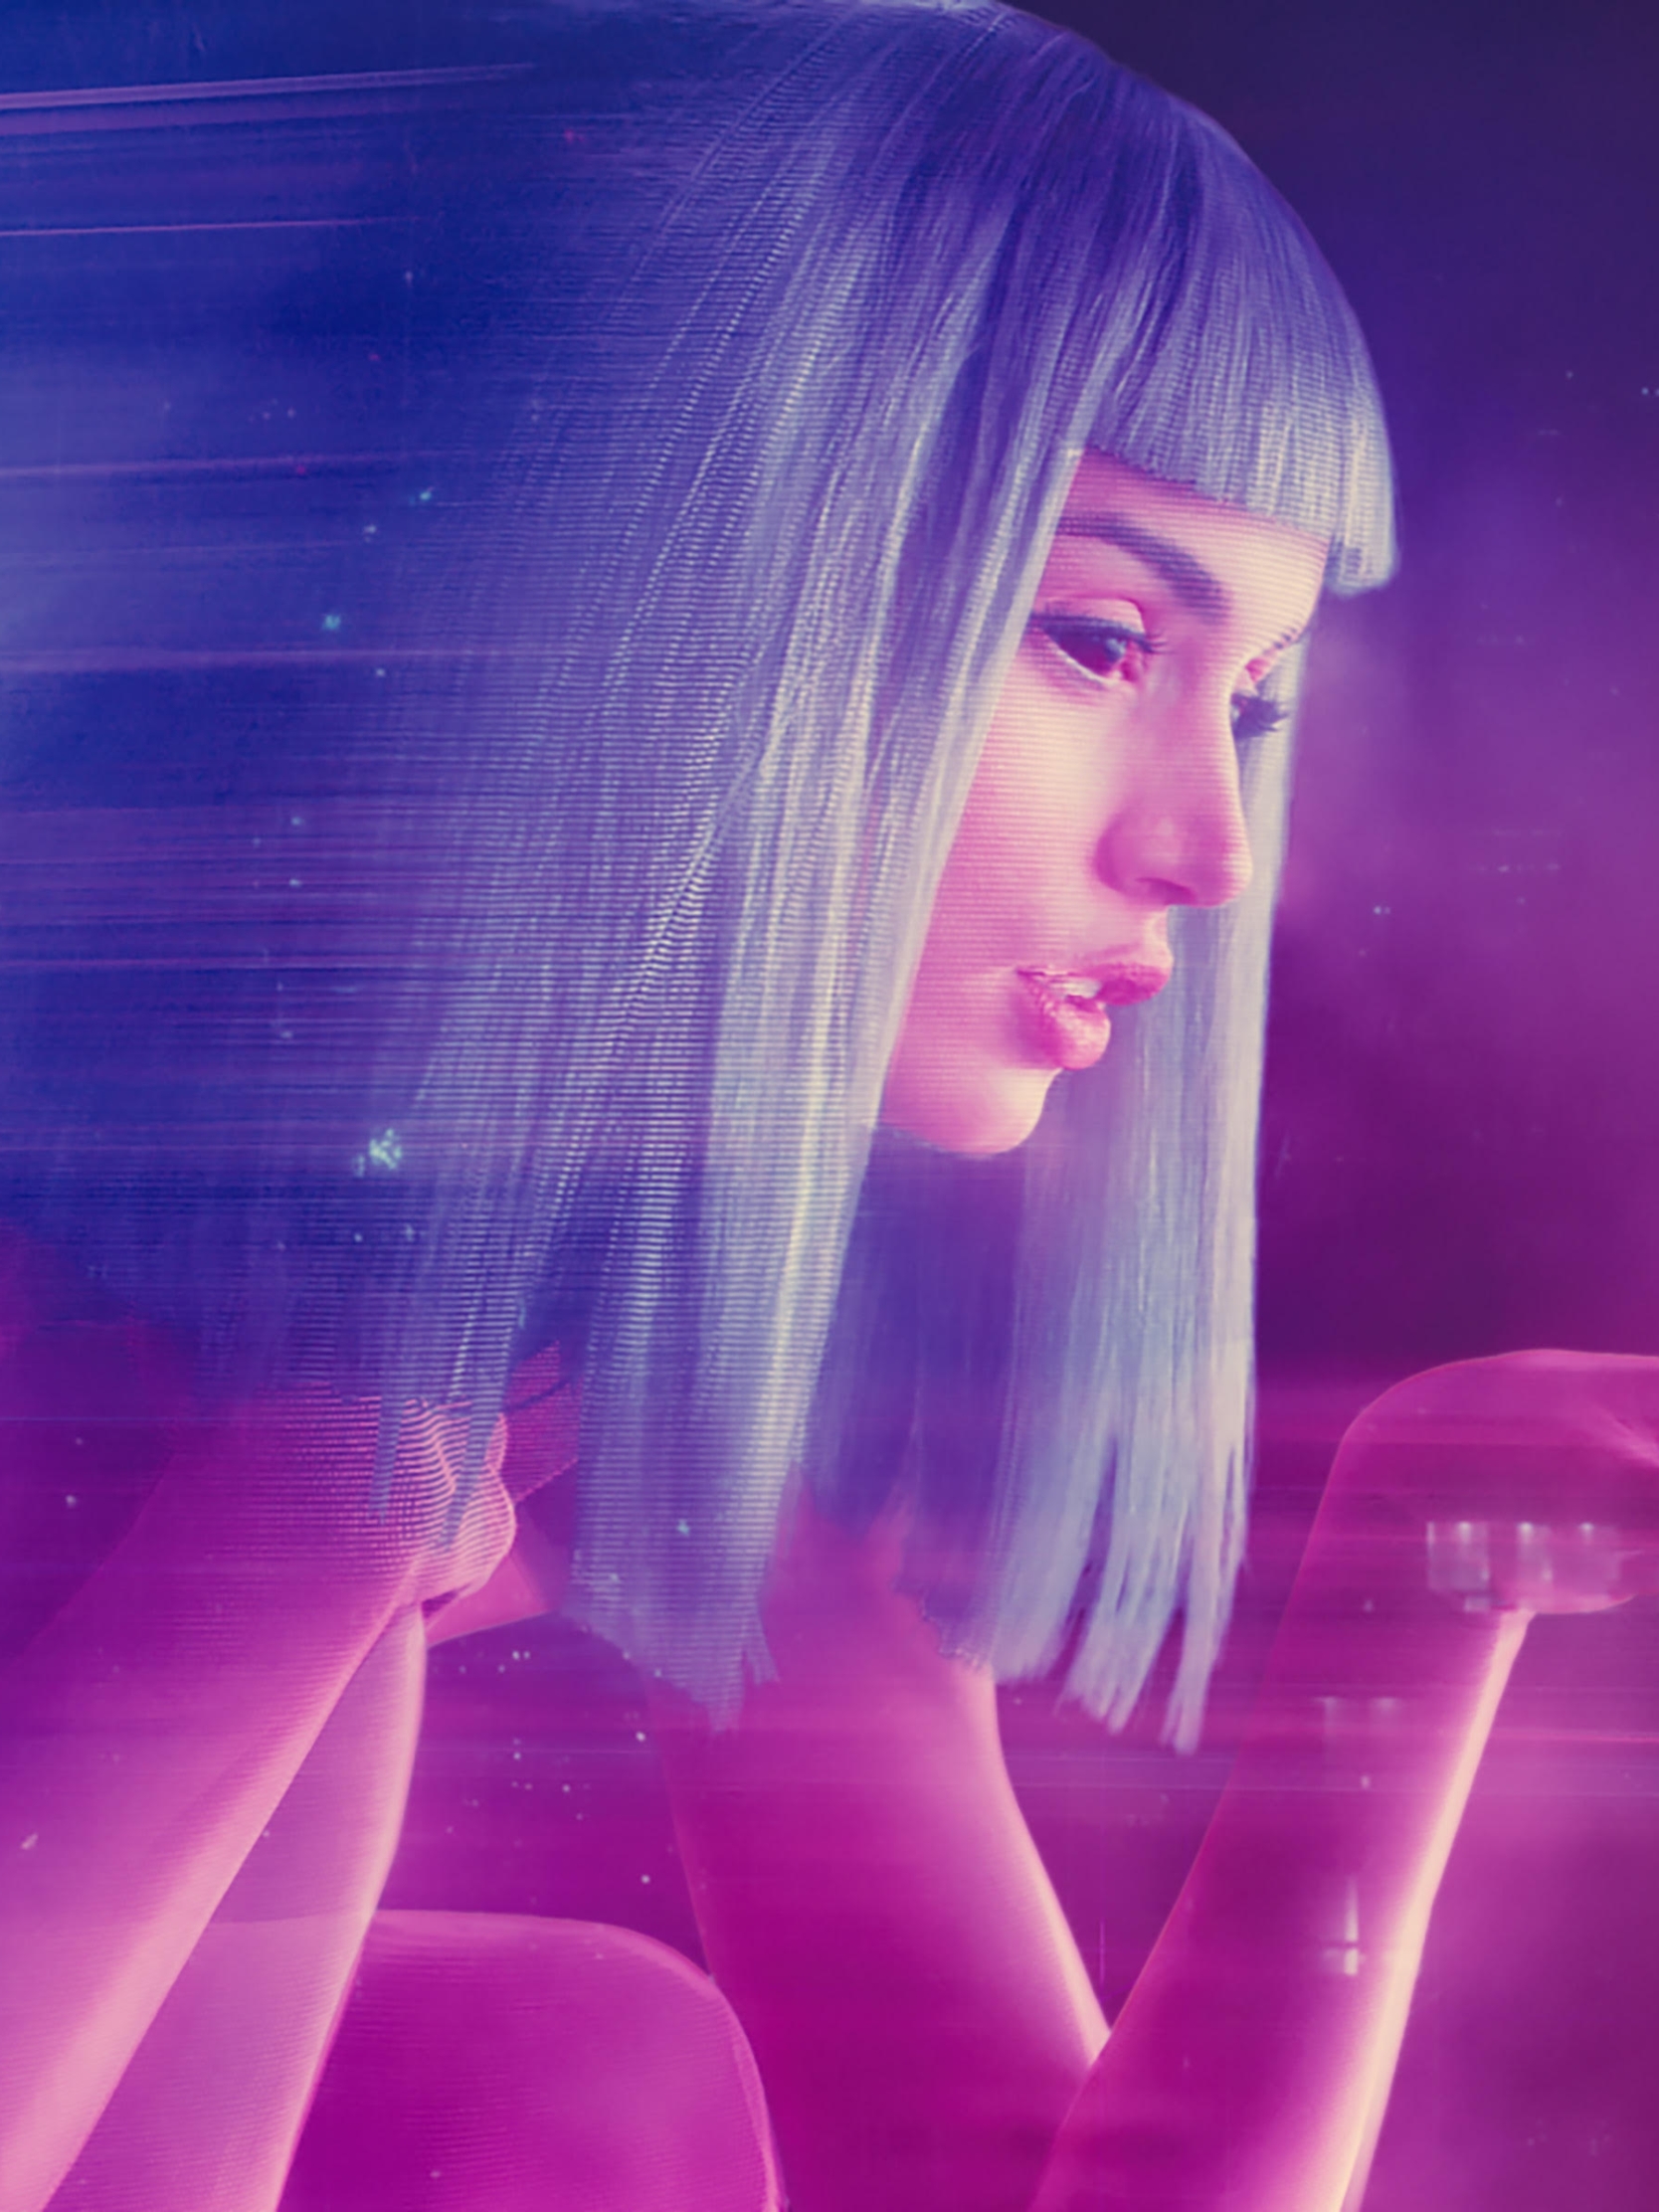 Download mobile wallpaper Movie, Ana De Armas, Blade Runner 2049, Joi (Blade Runner 2049) for free.